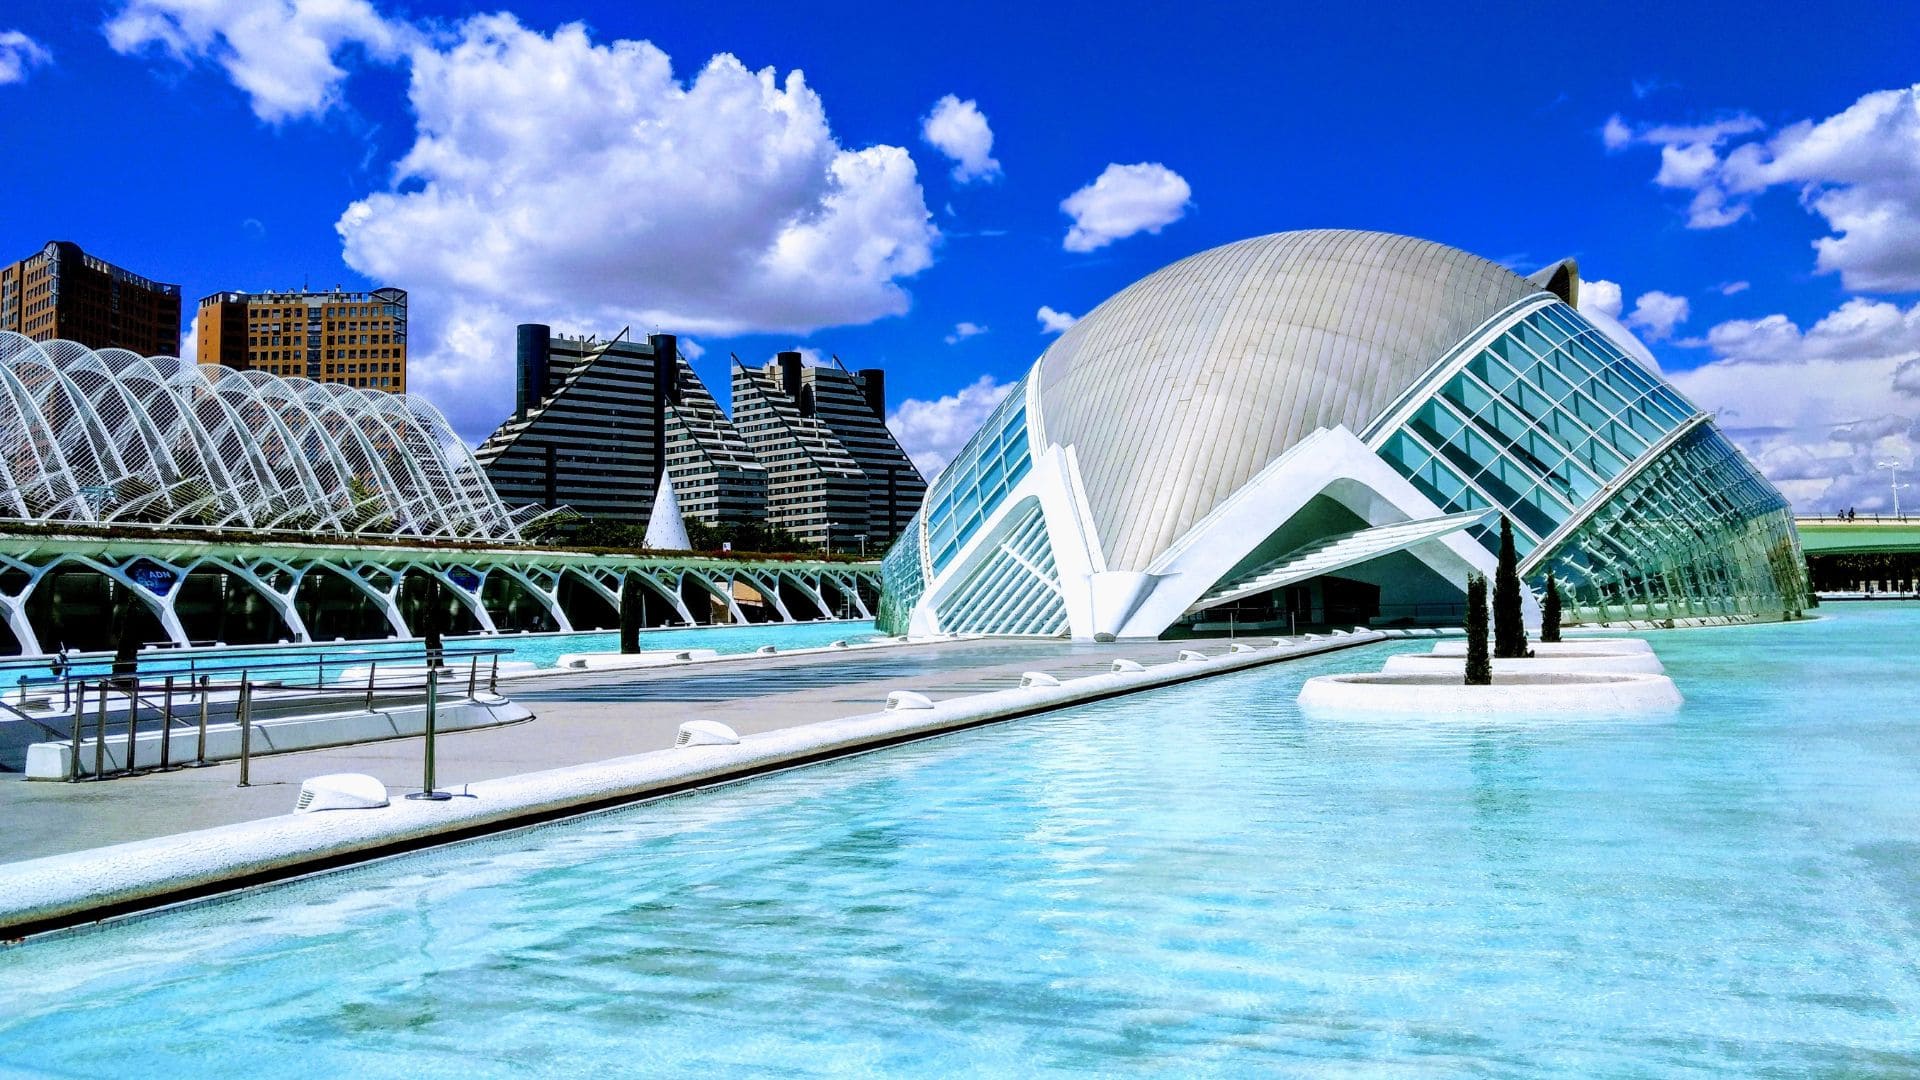 Viajes El Corte Inglés ofrece visita a Valencia desde 125 euros